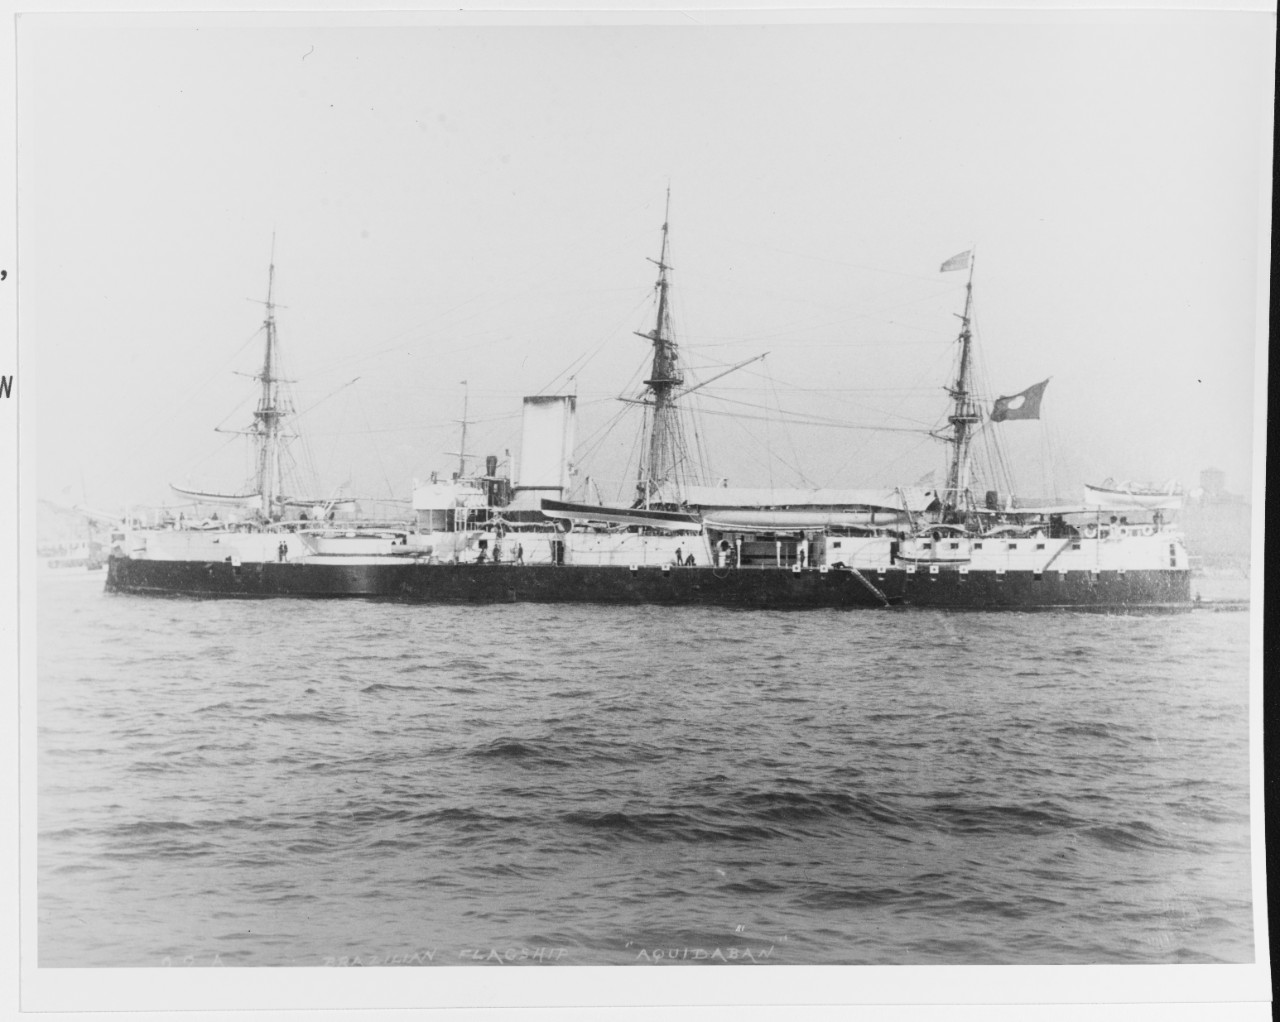 AQUIDABAN (Brazilian Battleship, 1885-1906)